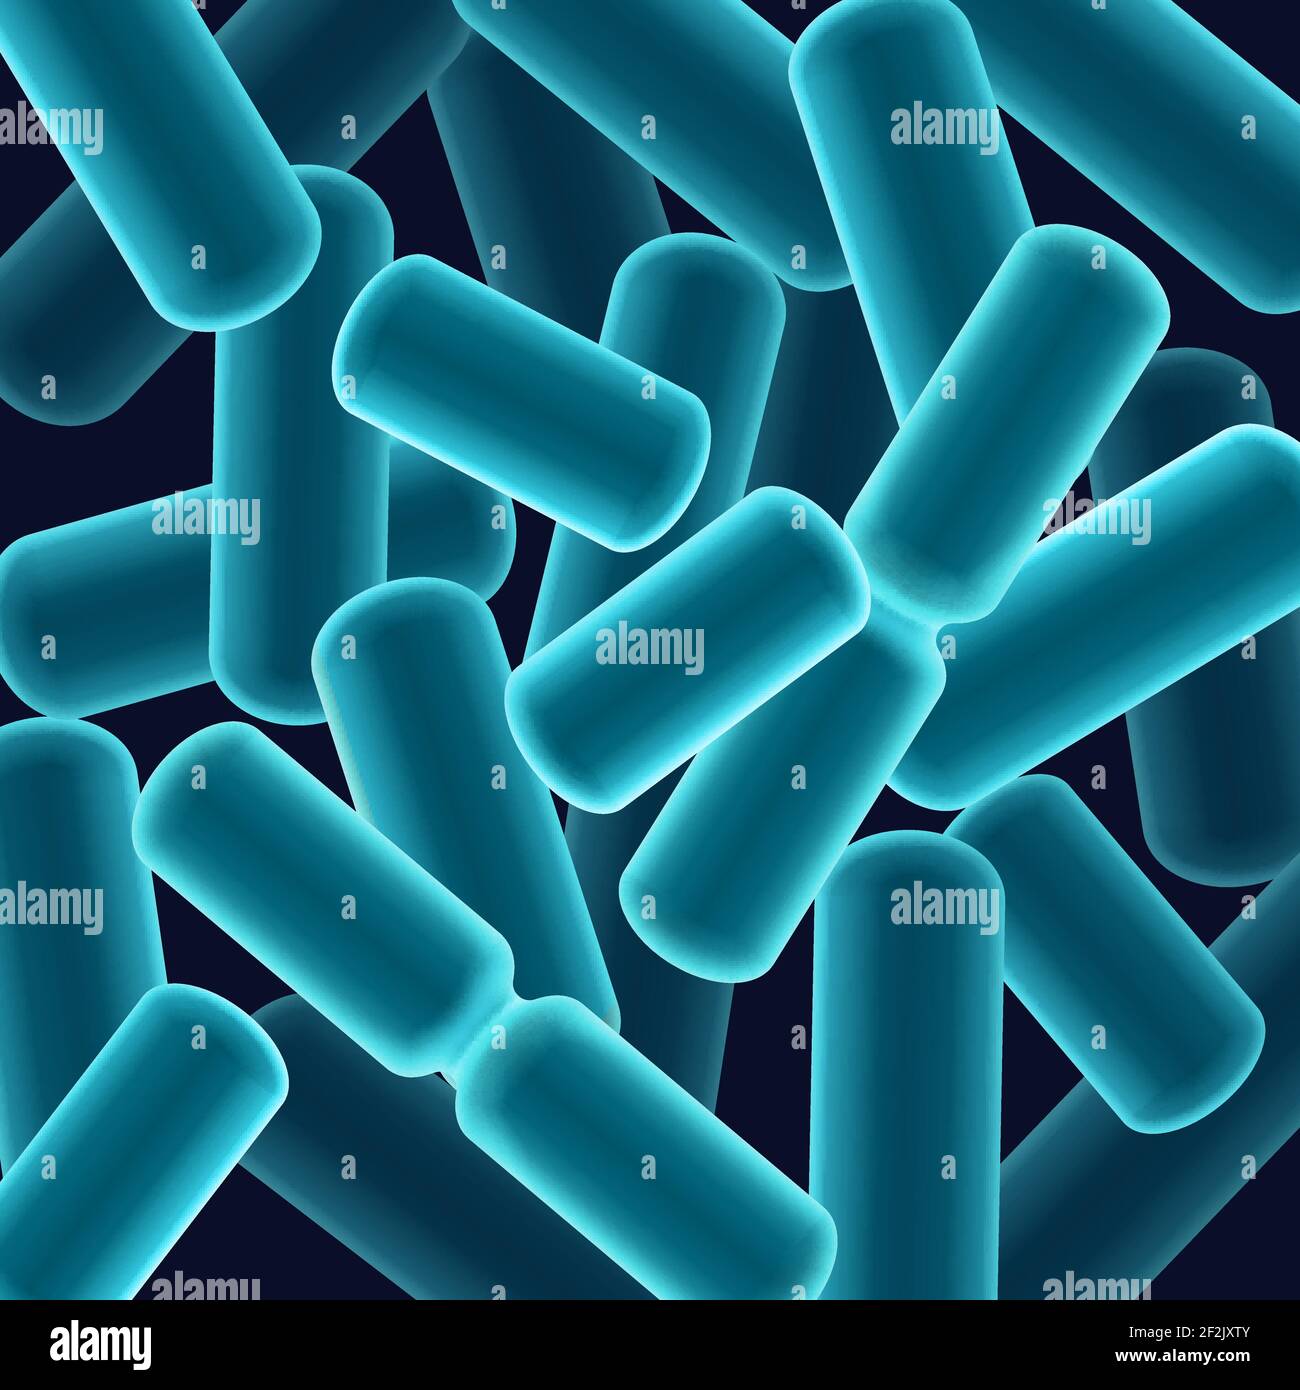 Vektor abstrakt blau Stab-förmigen Bazilli Bakterien Nahaufnahme Draufsicht Stock Vektor